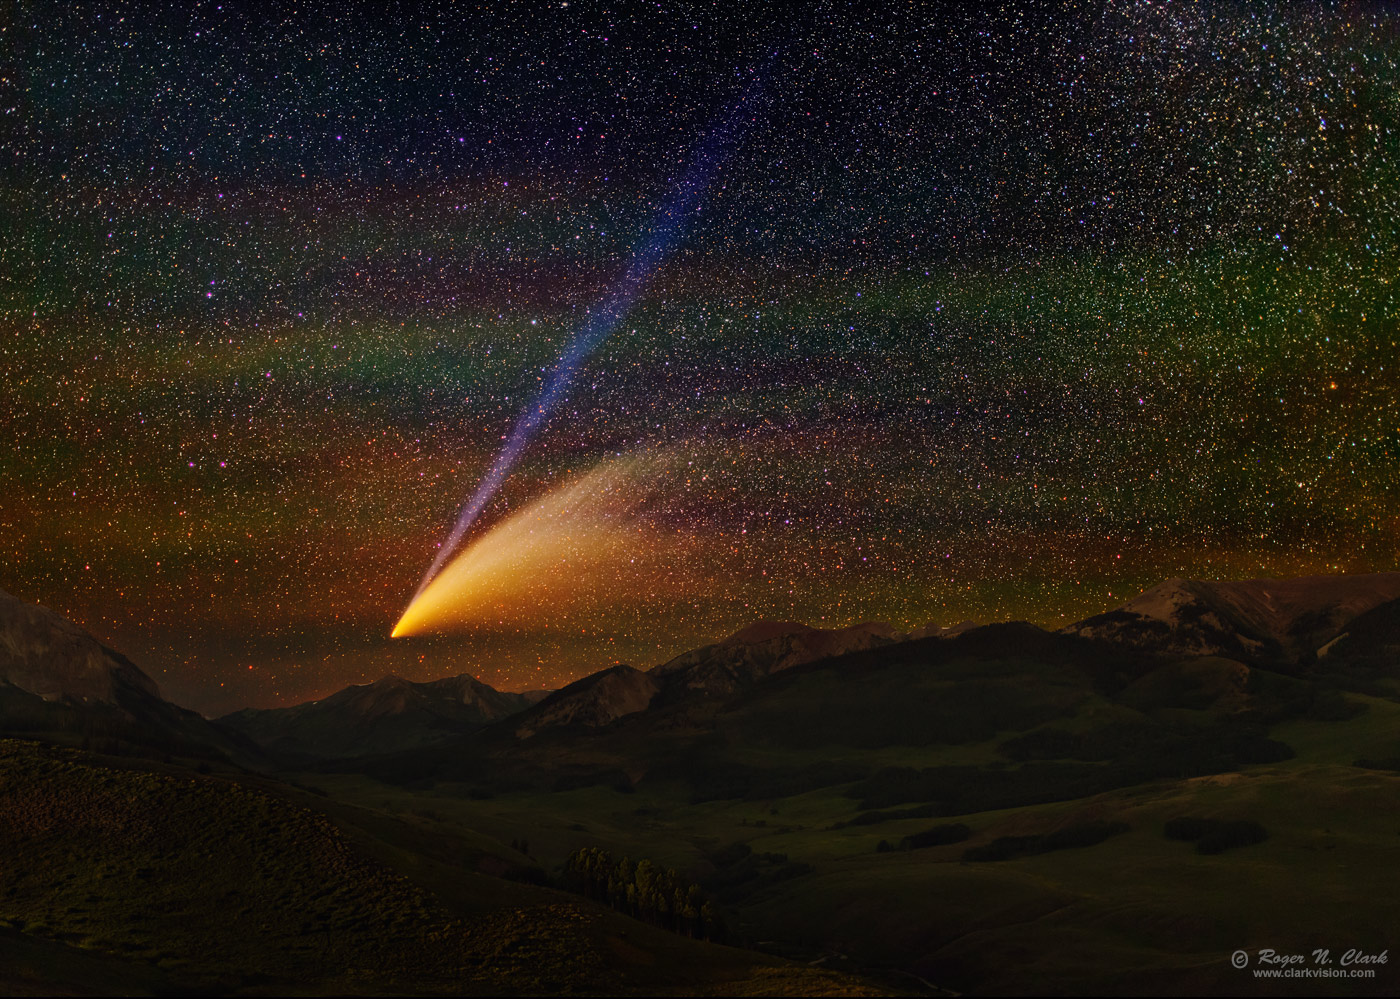 image comet-neowise-rnclark-c07.15.2020.img_4757-78-av22.h-1400s.jpg is Copyrighted by Roger N. Clark, www.clarkvision.com